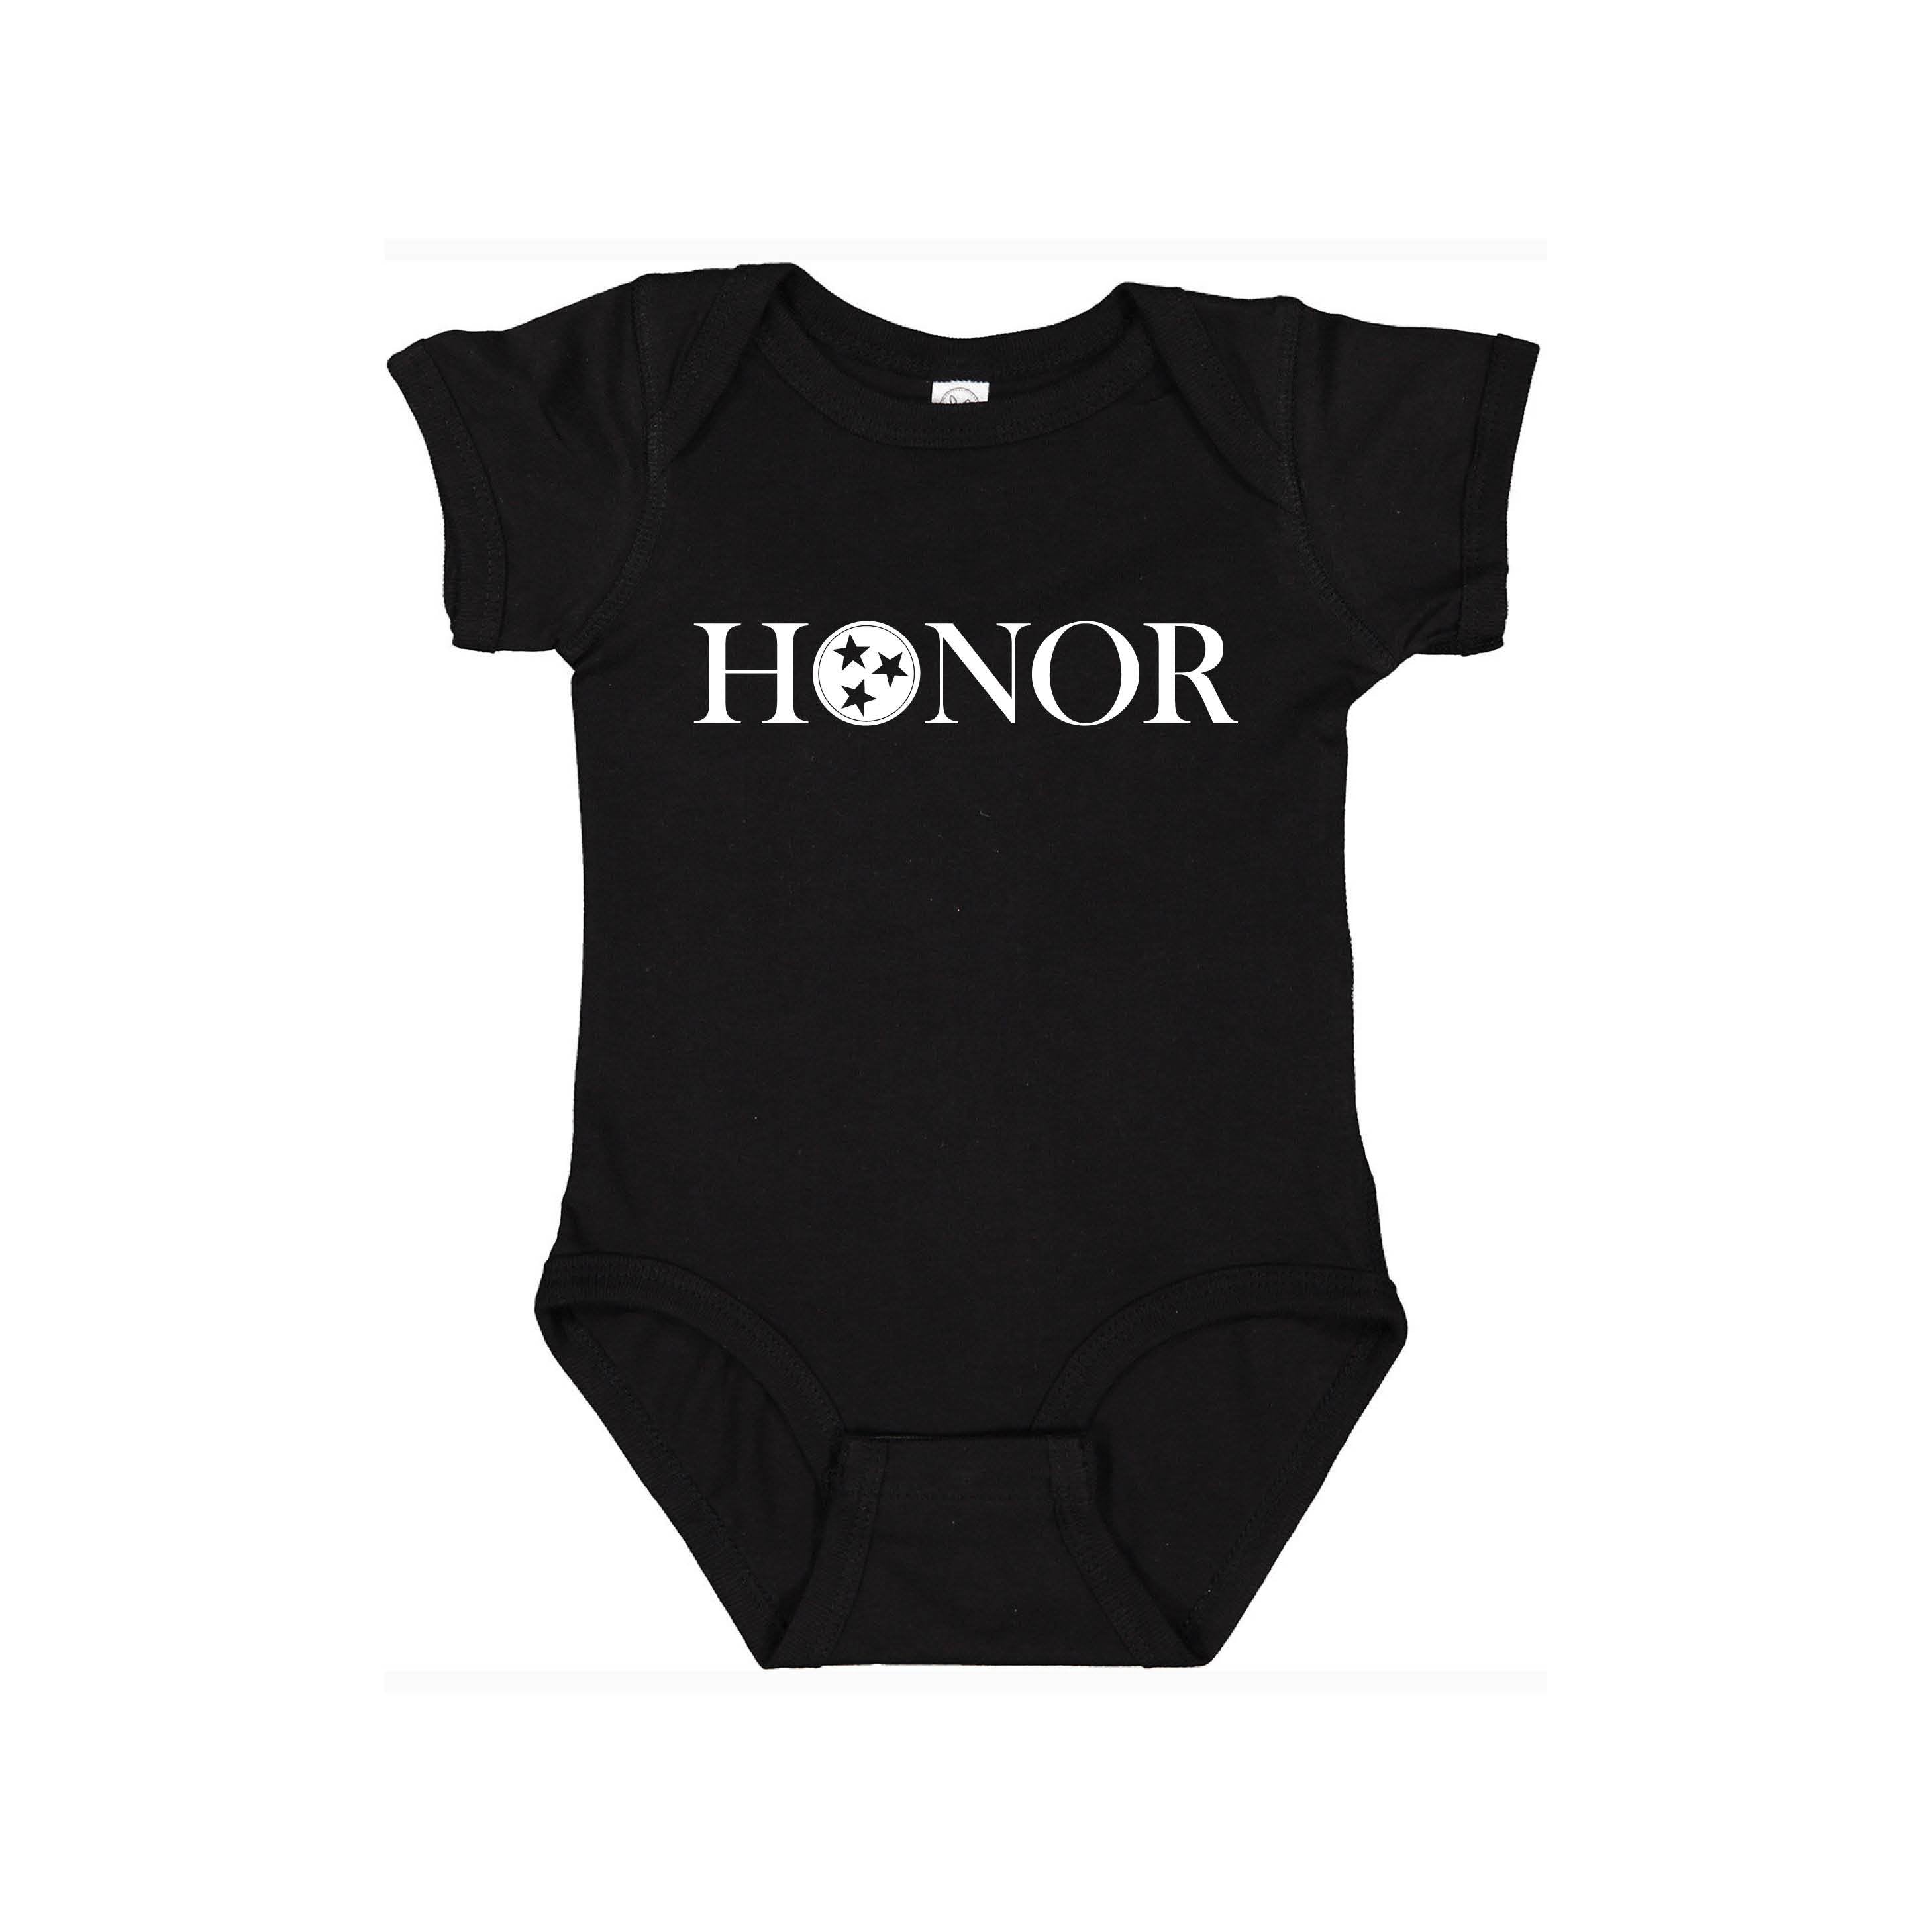 Honor Baby Onsie